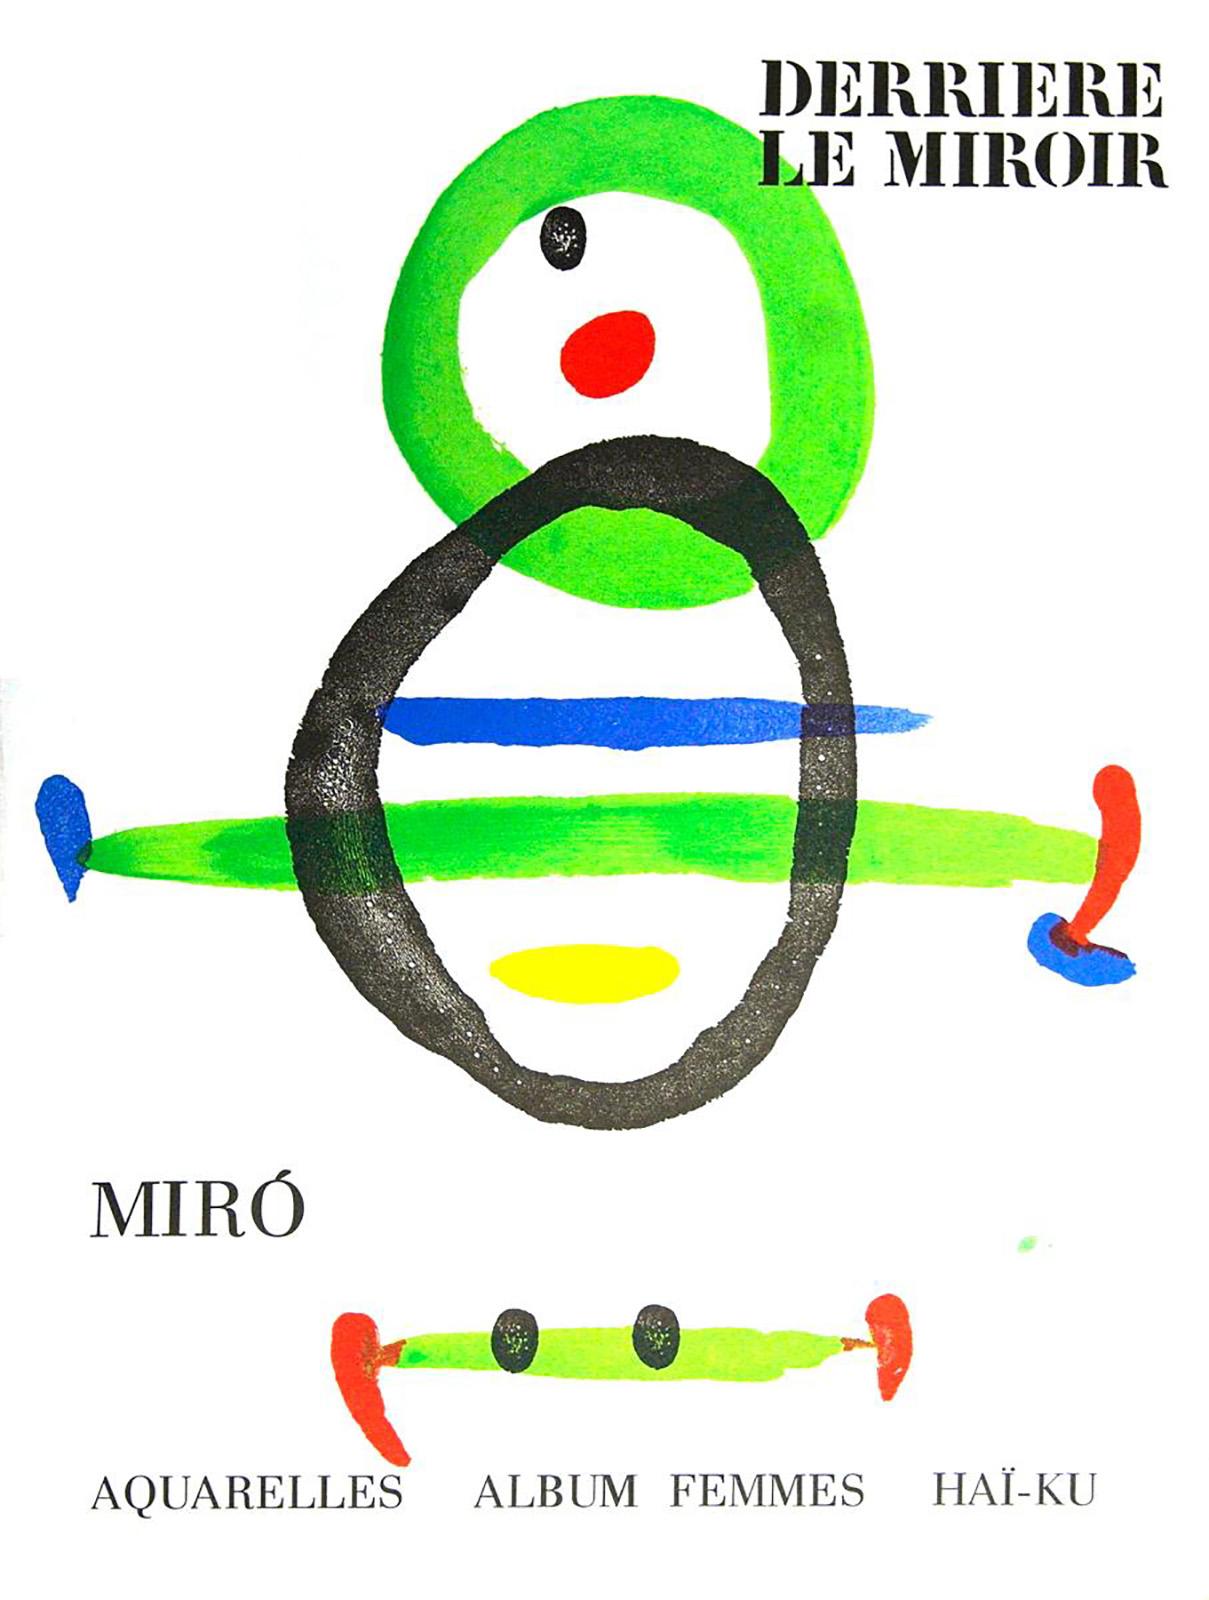 Joan Miró Derriere Le Miroir c.1967 (lithographic cover)